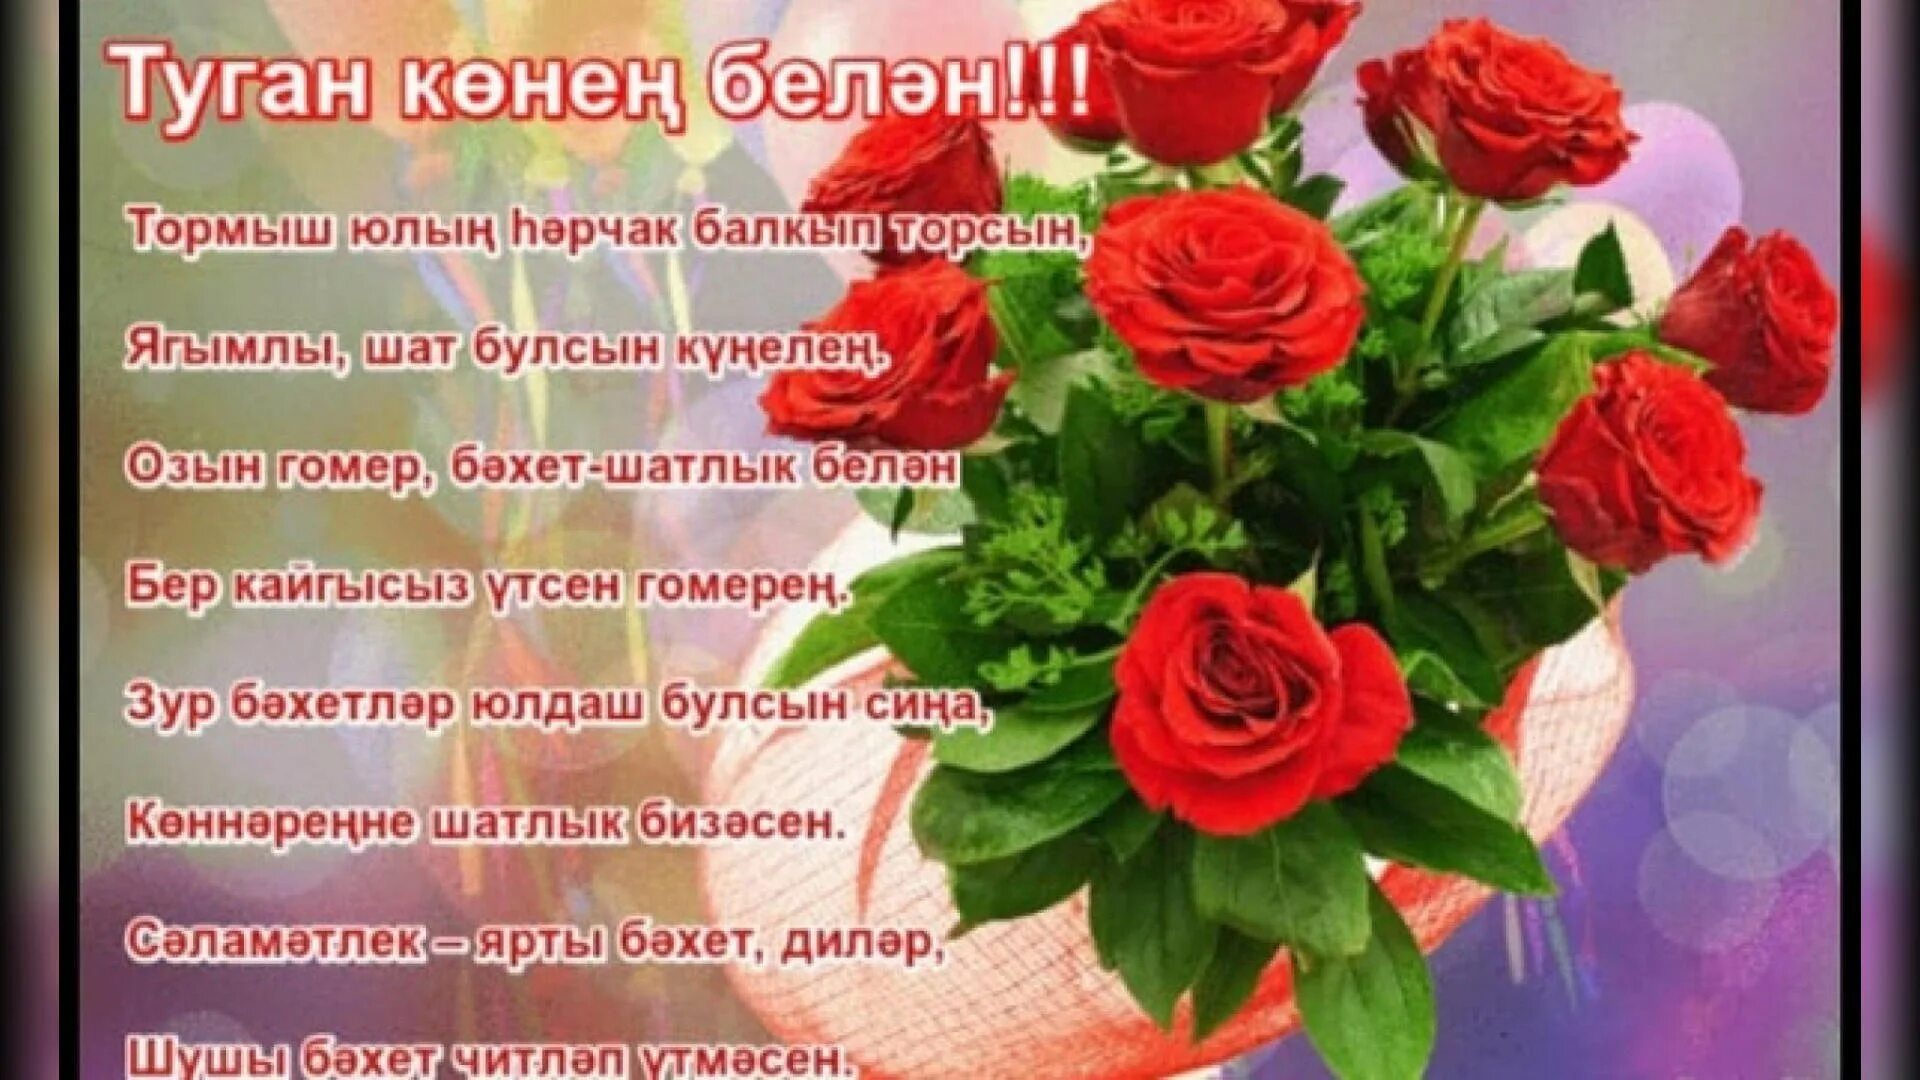 Туган конен белэн яшь кызга. Татарские поздравления с днем рождения. Поздравления с днём рождения на татарском языке. Поздравления с днём рождения женщине на татарском языке. Поздравления с днём рождения женщине на татарском.